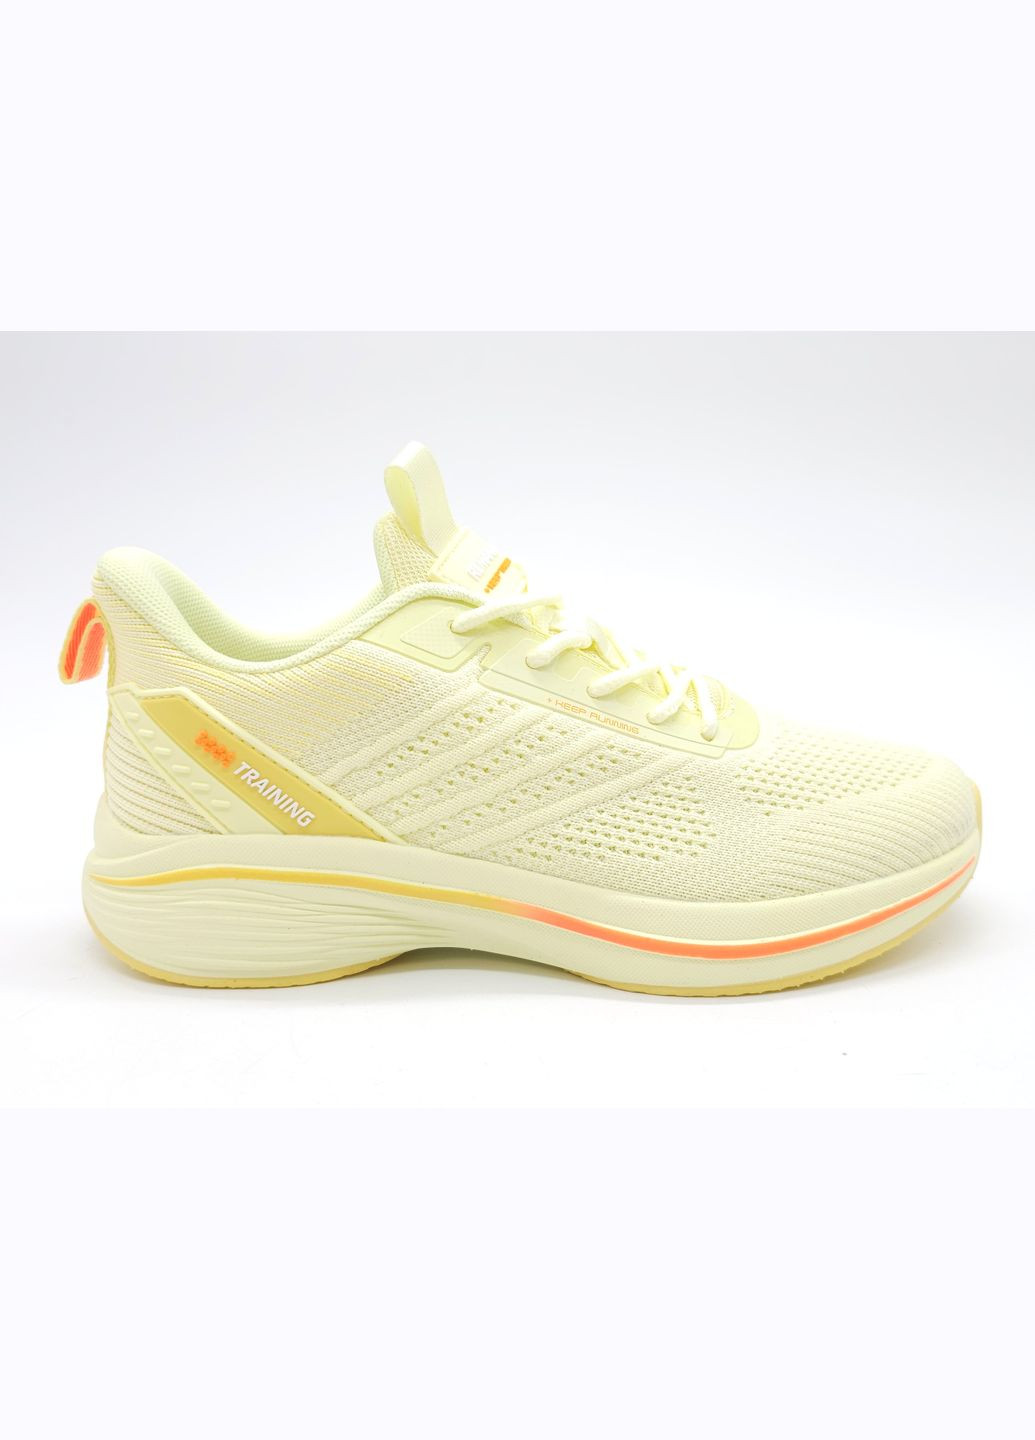 Желтые всесезонные женские кроссовки желтые текстиль bs-18-1 23,5 см (р) Baas